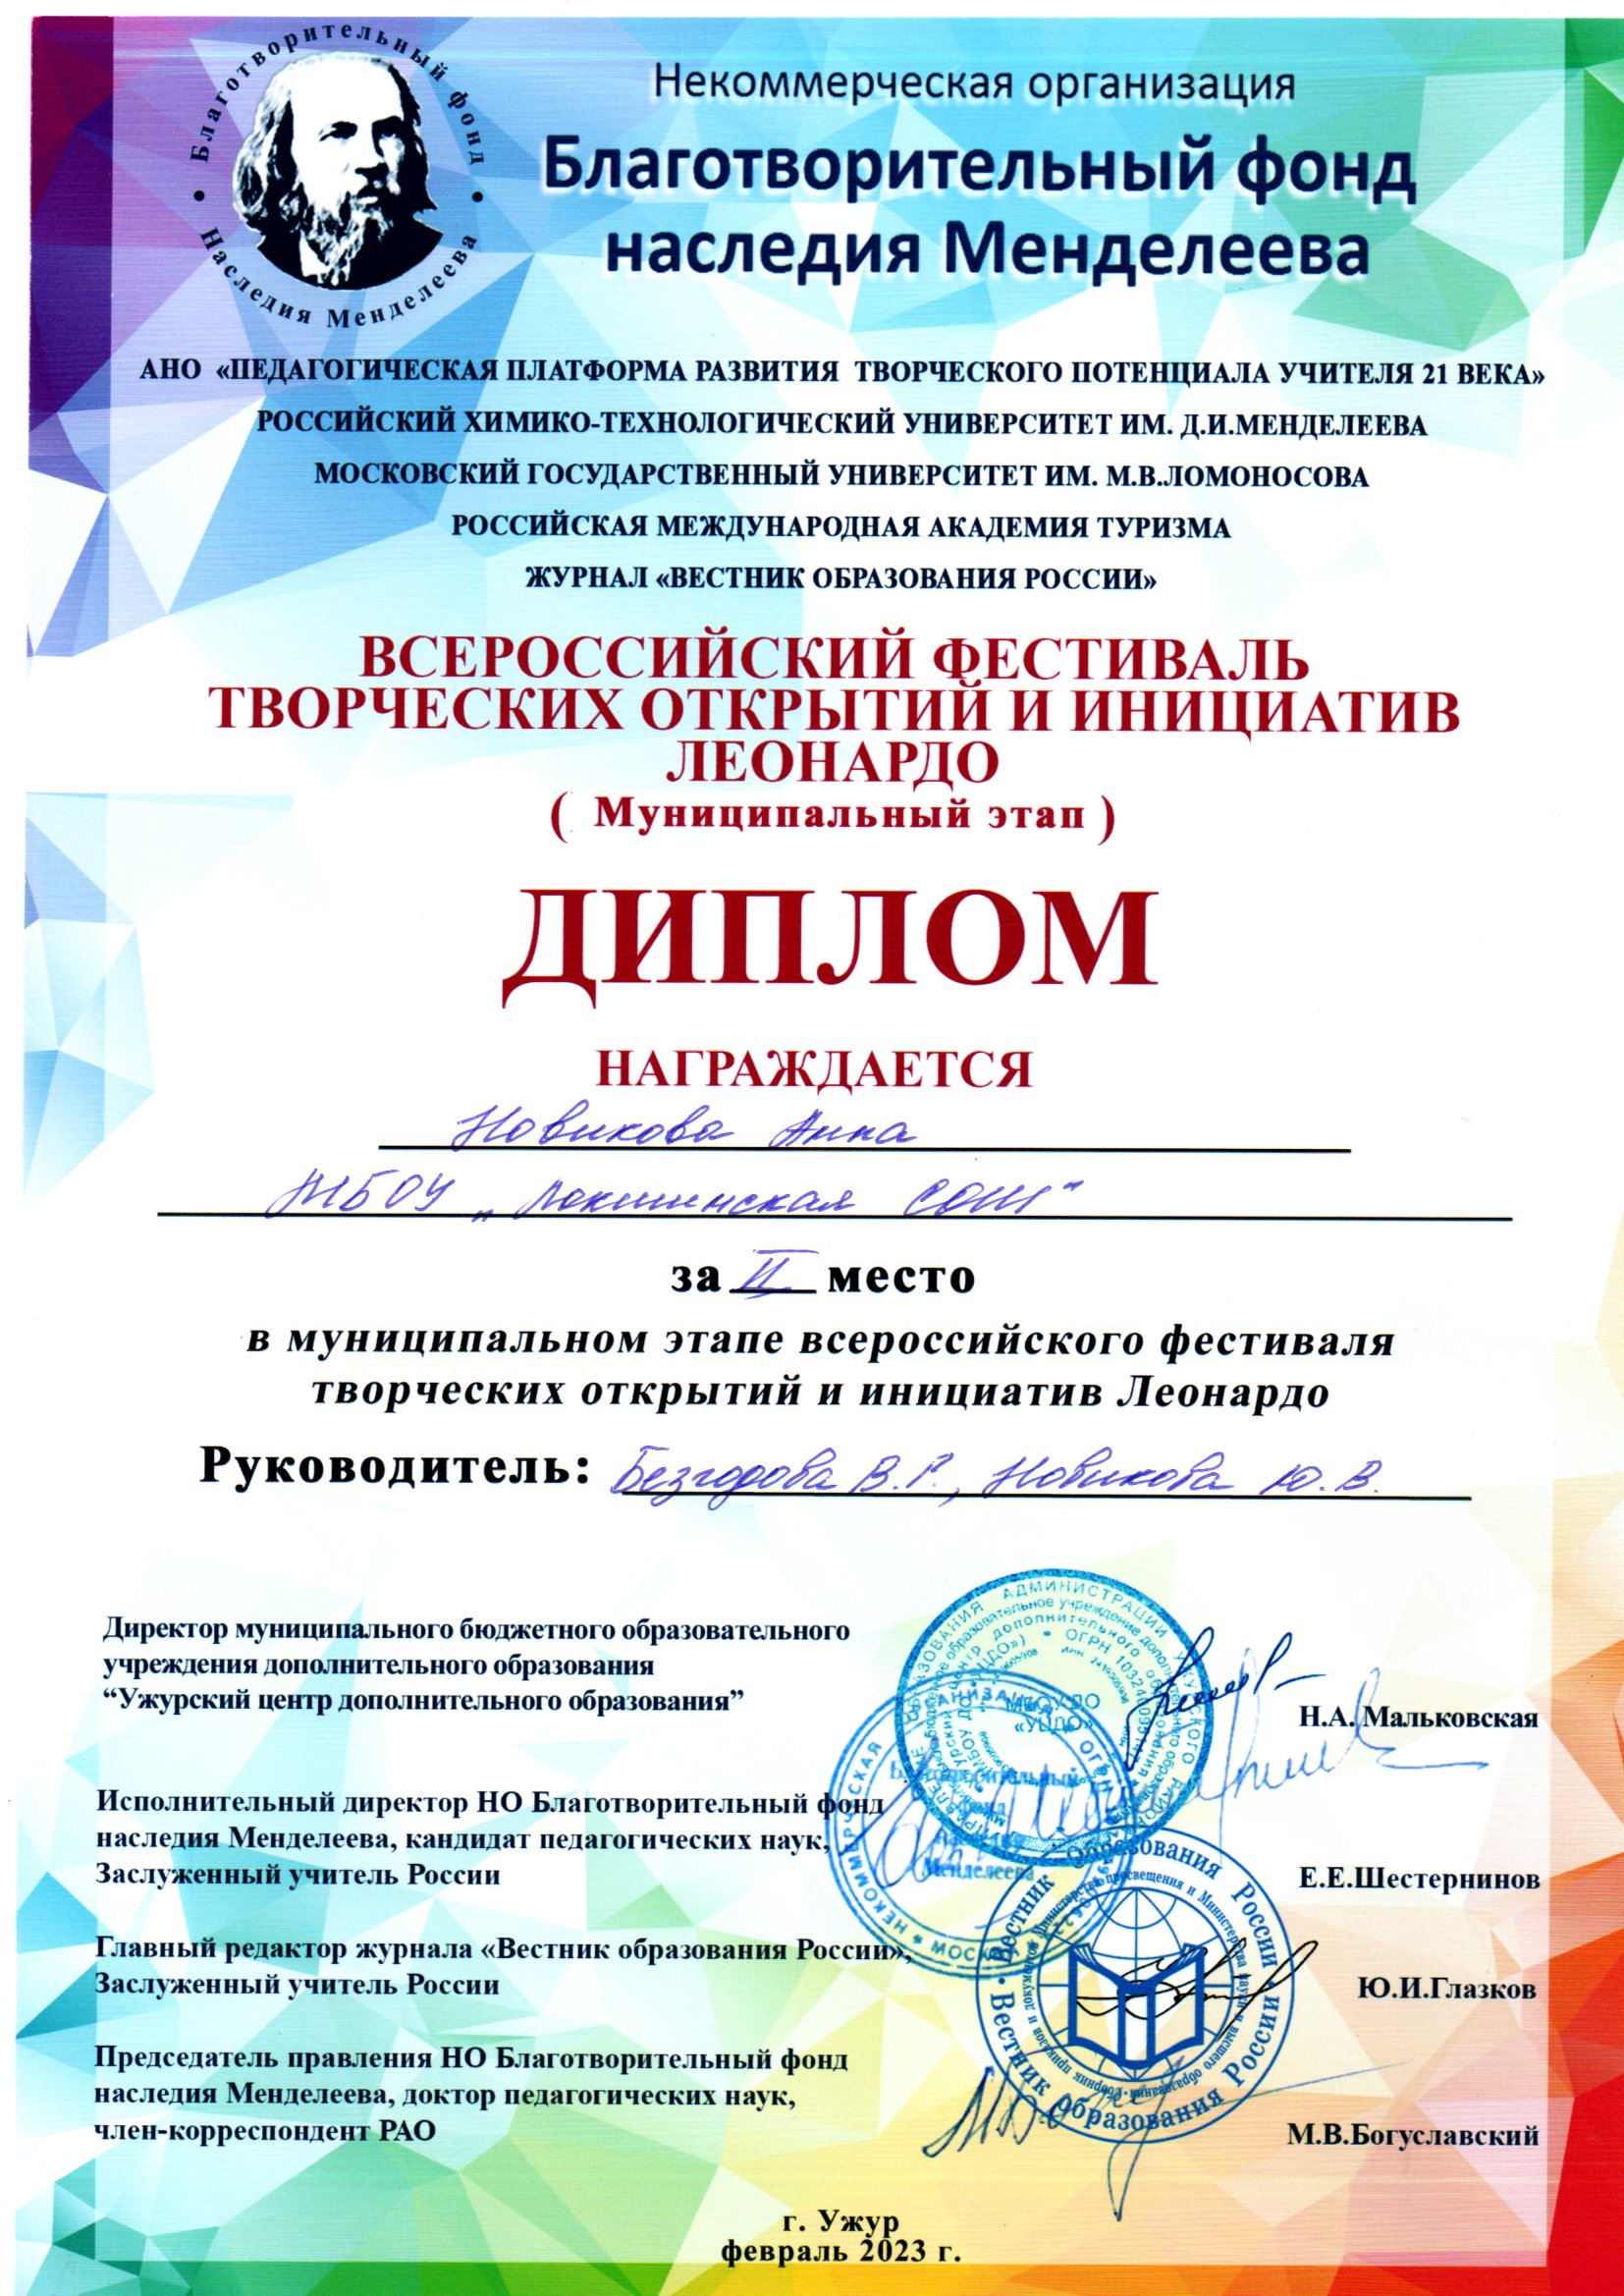 Всероссийский фестиваль творческих открытий и инициатив Леонардо.